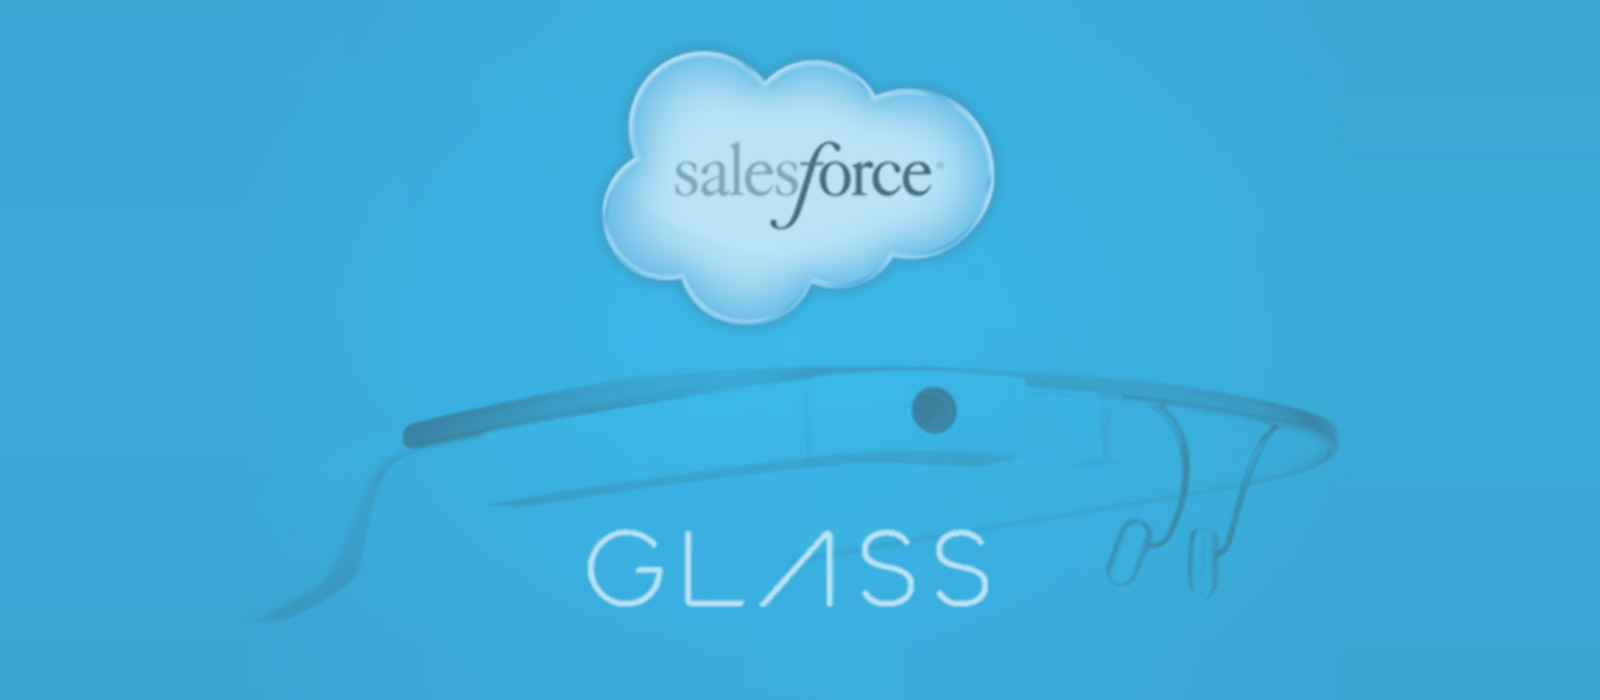 Salesforce Google Glass Wear